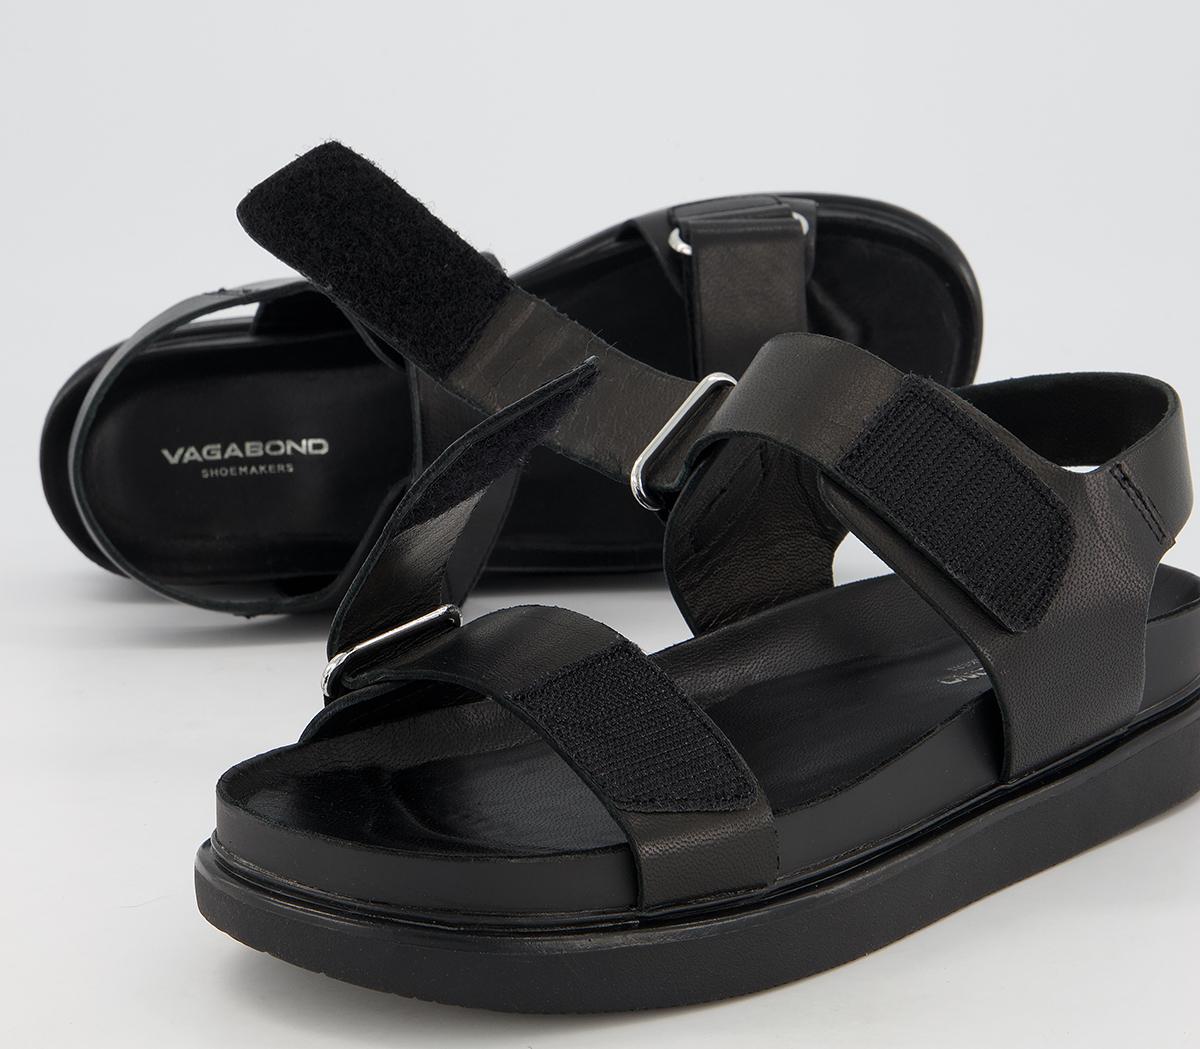 Vagabond Shoemakers Erin Two Strap Sandals Black - Women’s Sandals